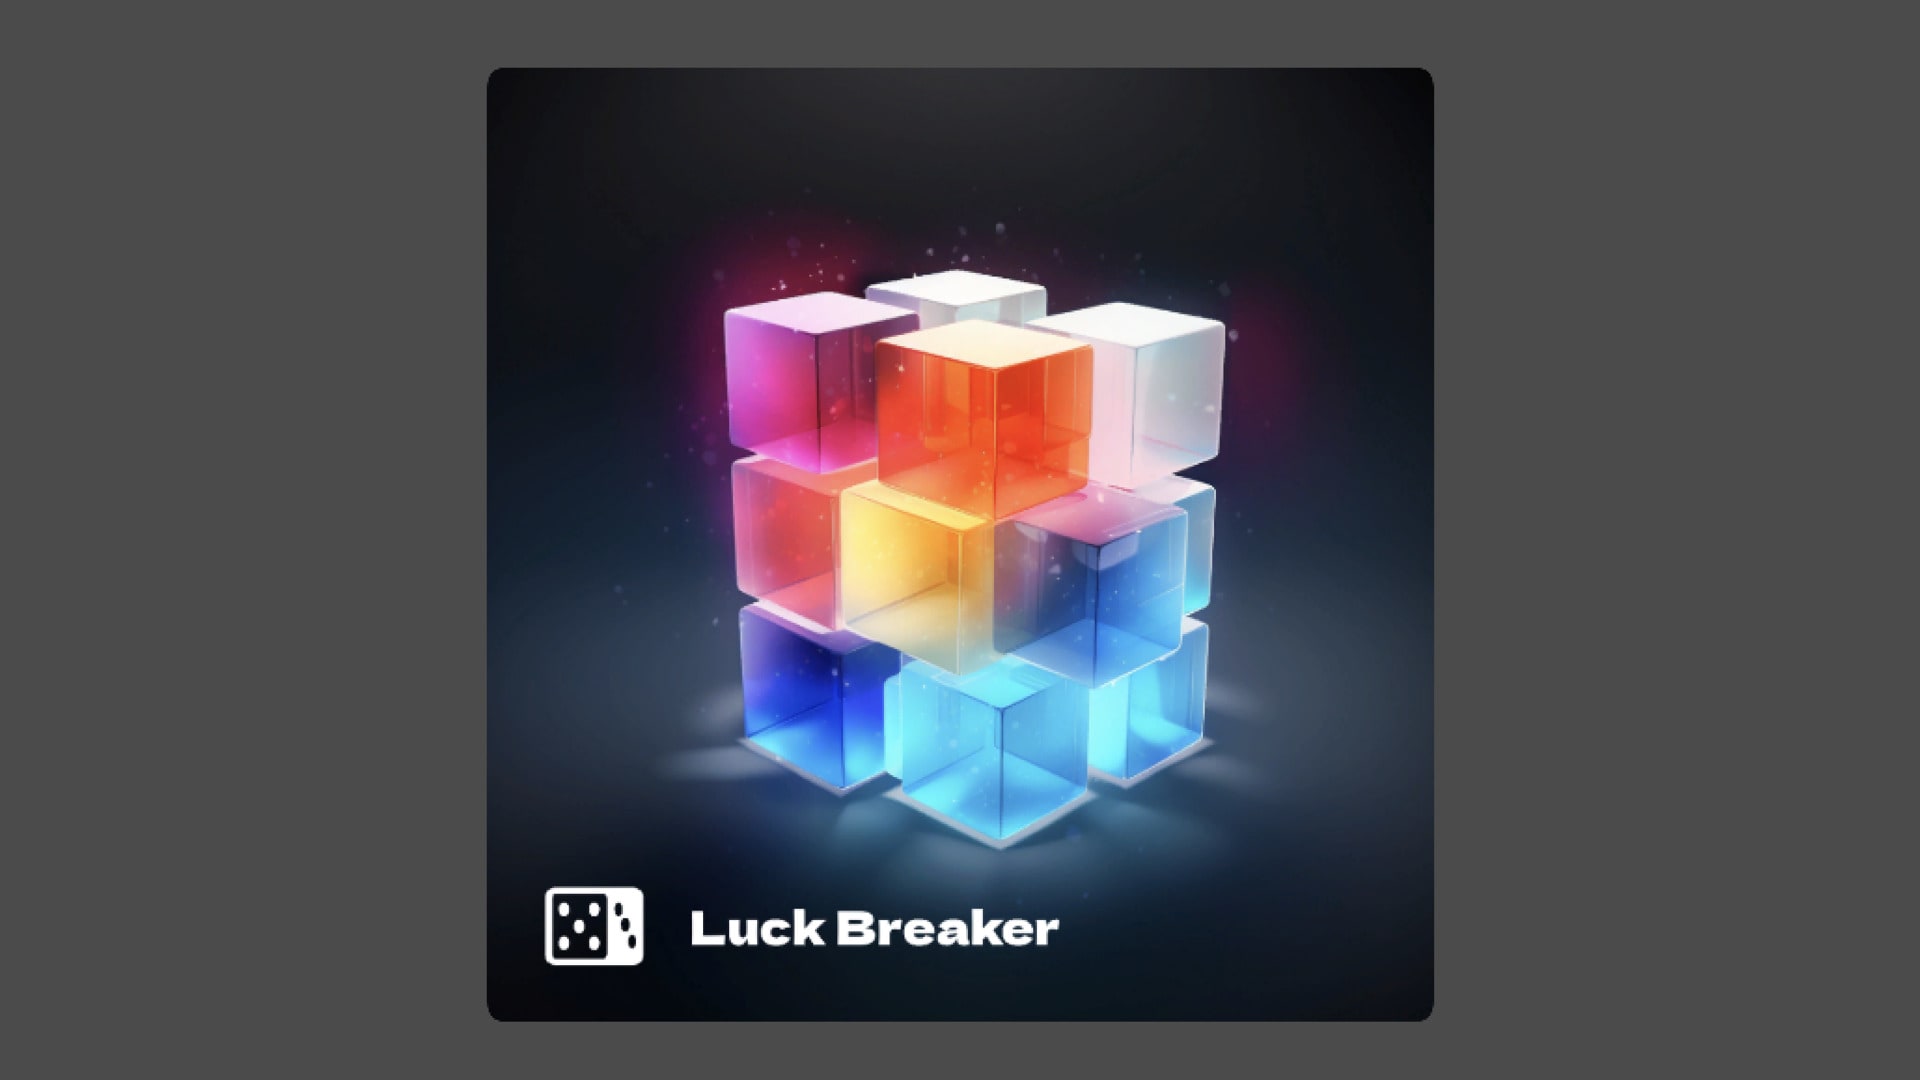 Luck Breaker